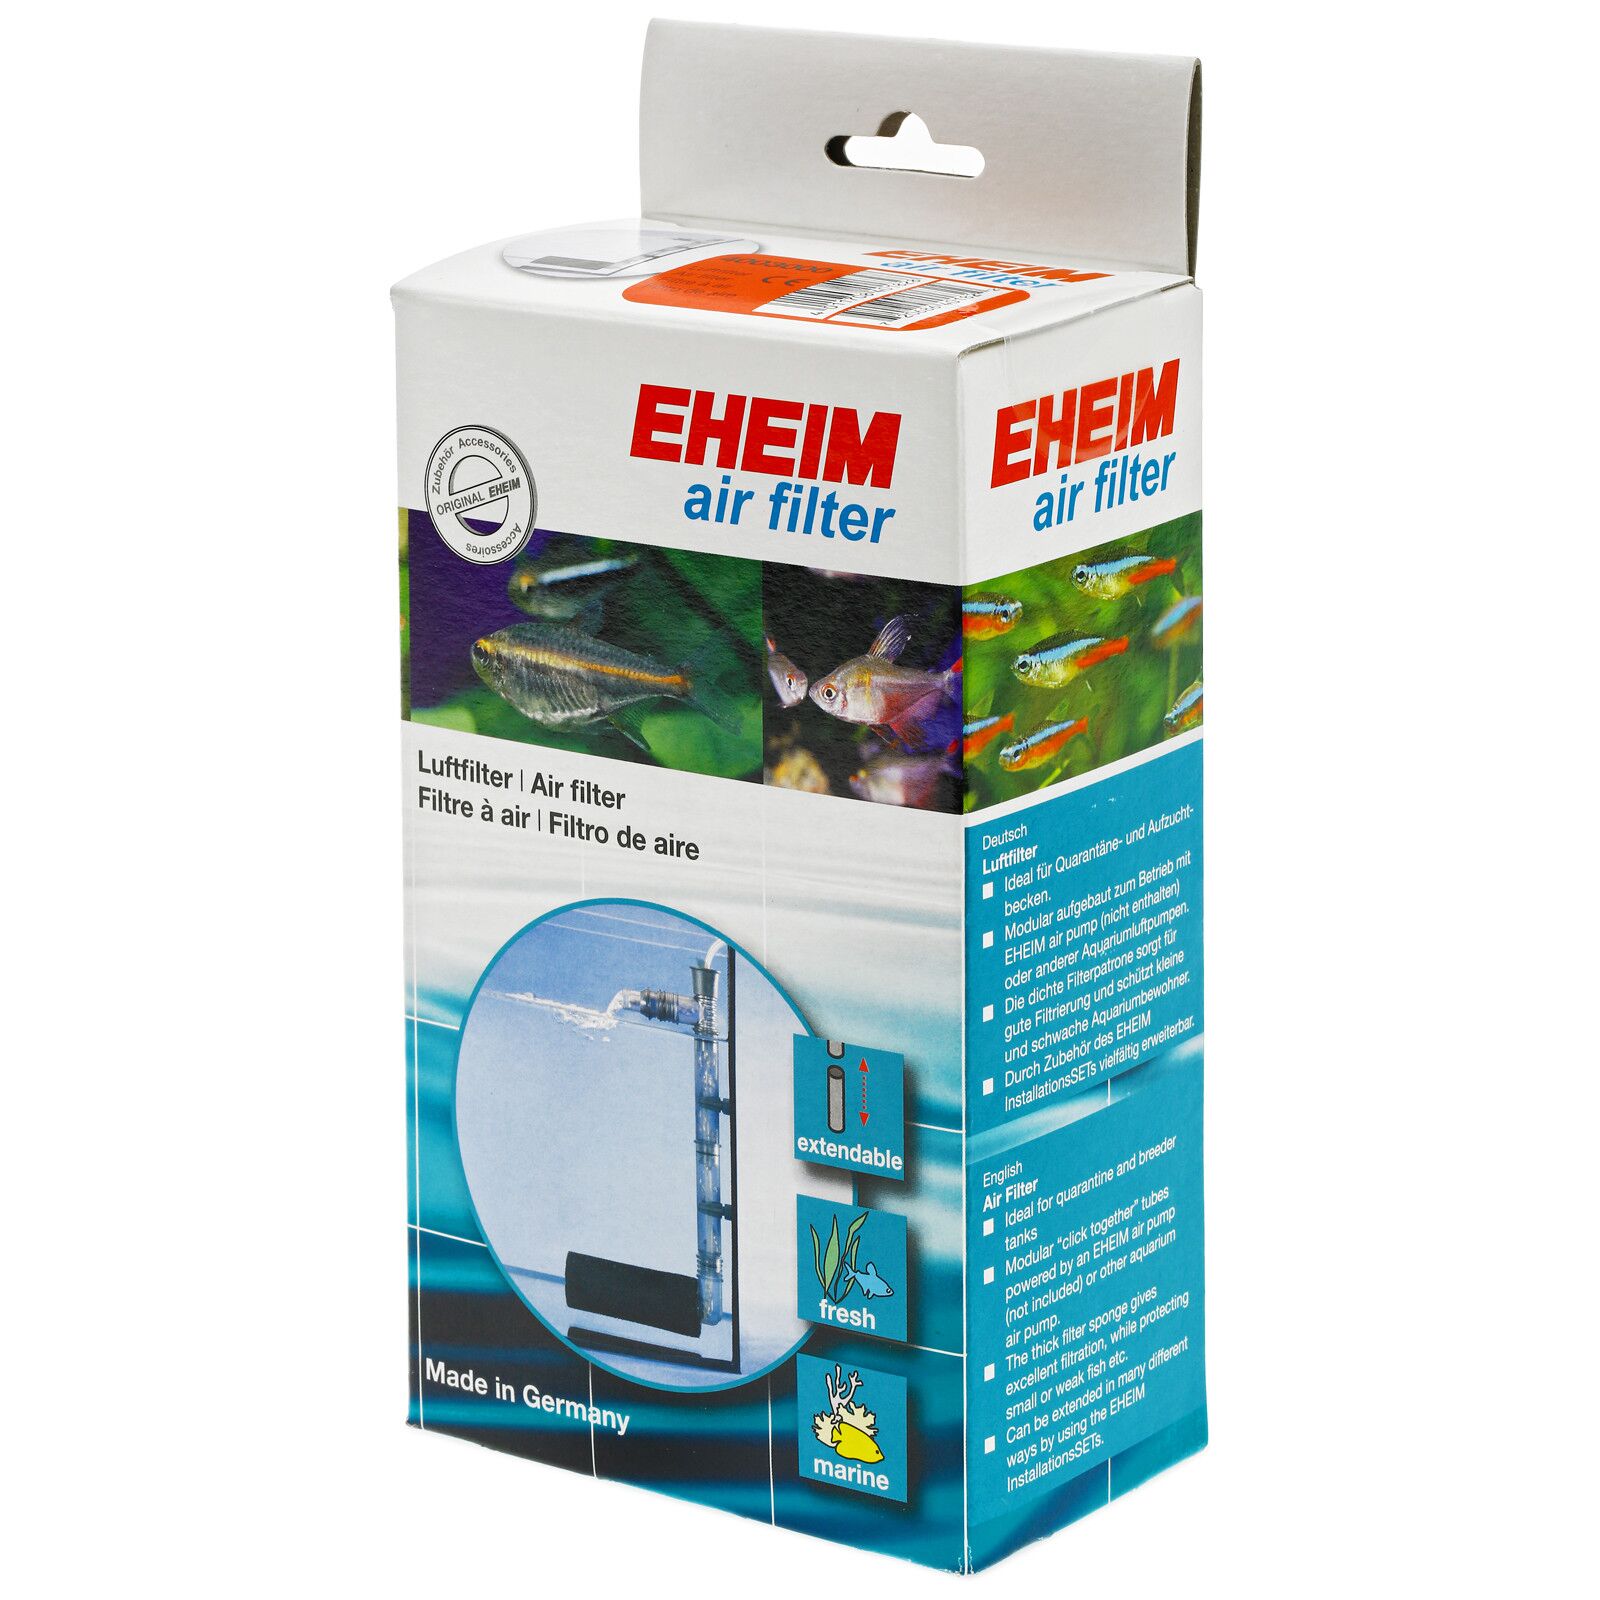 EHEIM - air filter